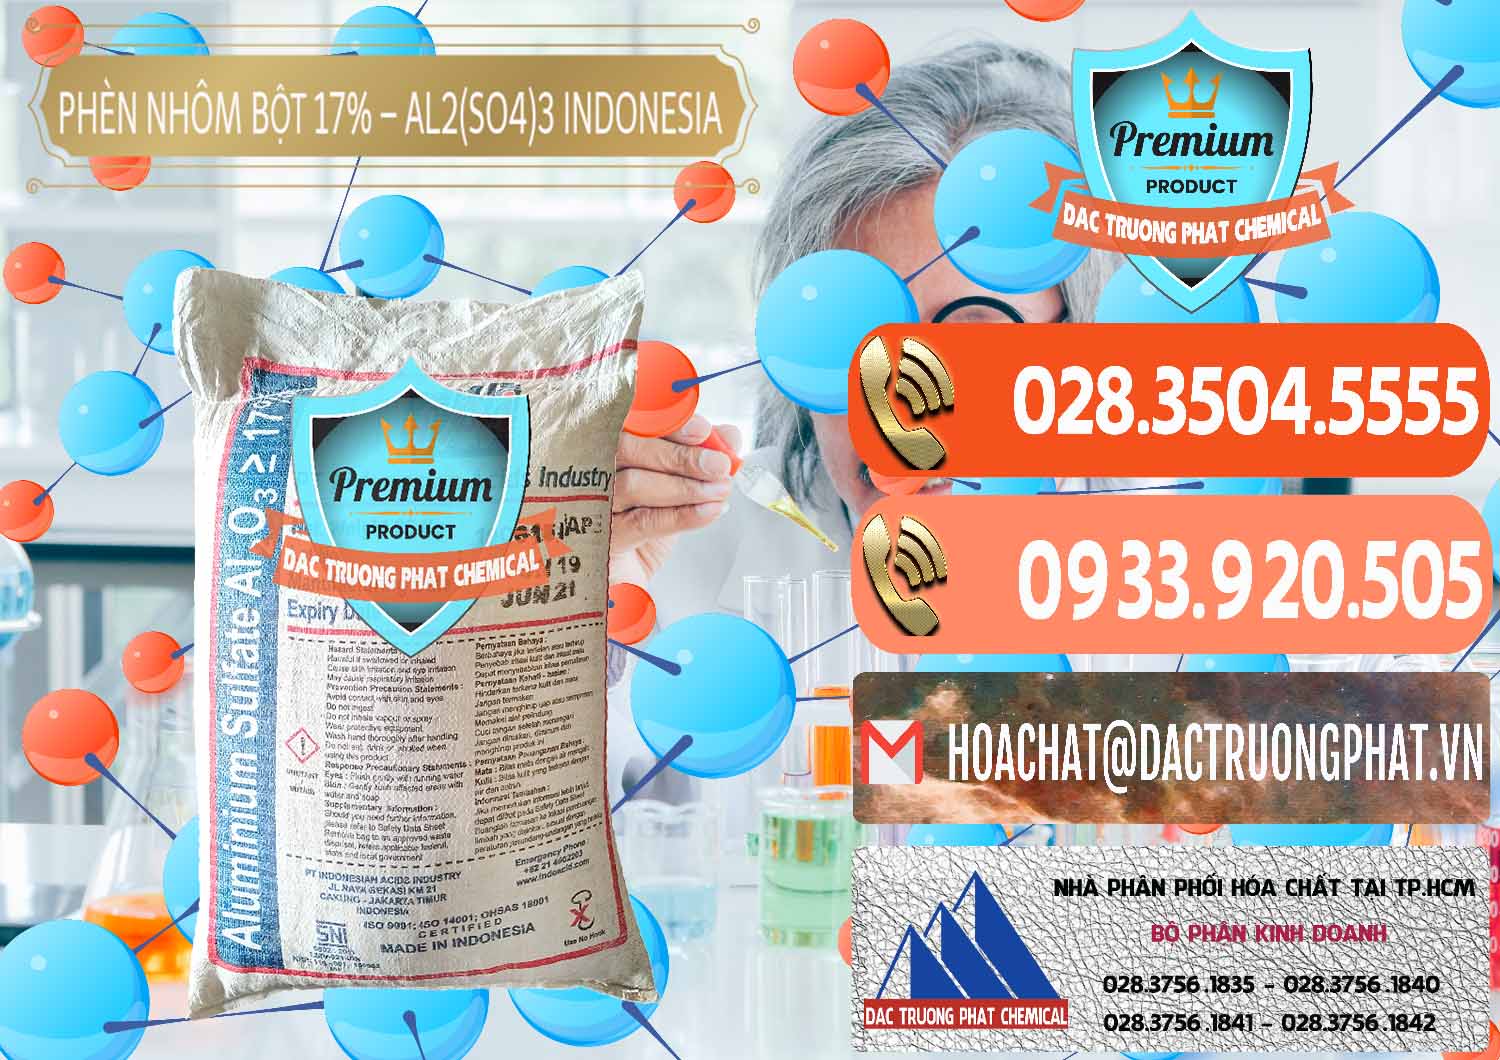 Đơn vị chuyên bán - cung ứng Phèn Nhôm Bột - Al2(SO4)3 17% bao 25kg Indonesia - 0114 - Cty chuyên phân phối & kinh doanh hóa chất tại TP.HCM - hoachatmientay.com